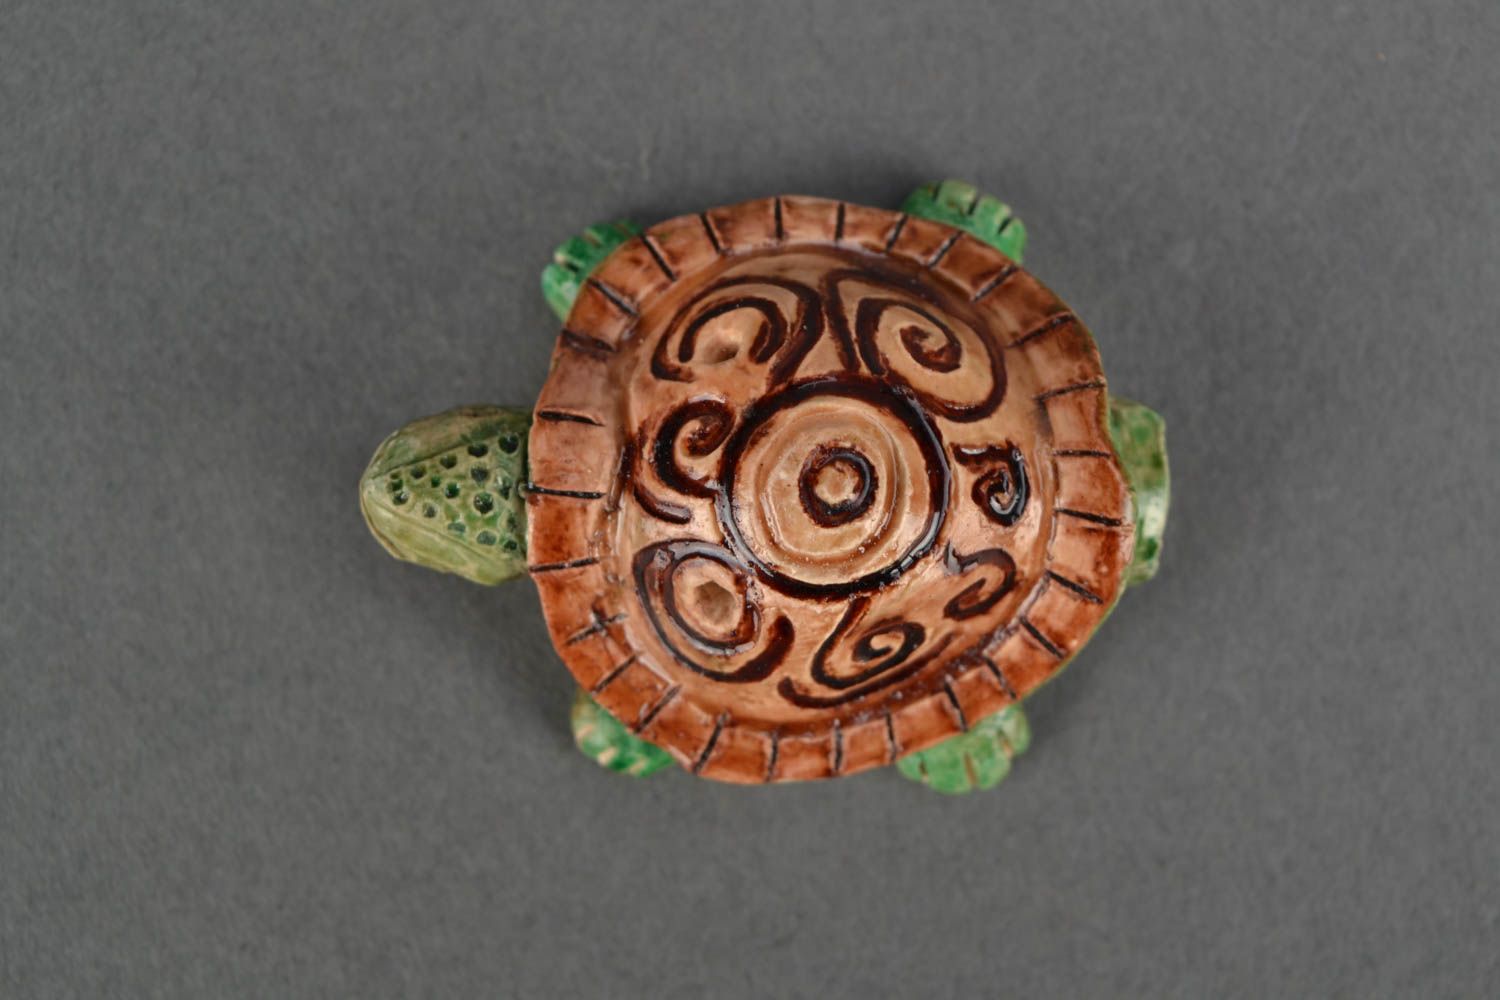 Sifflet instrument de musique en forme de tortue miniature peint original photo 4